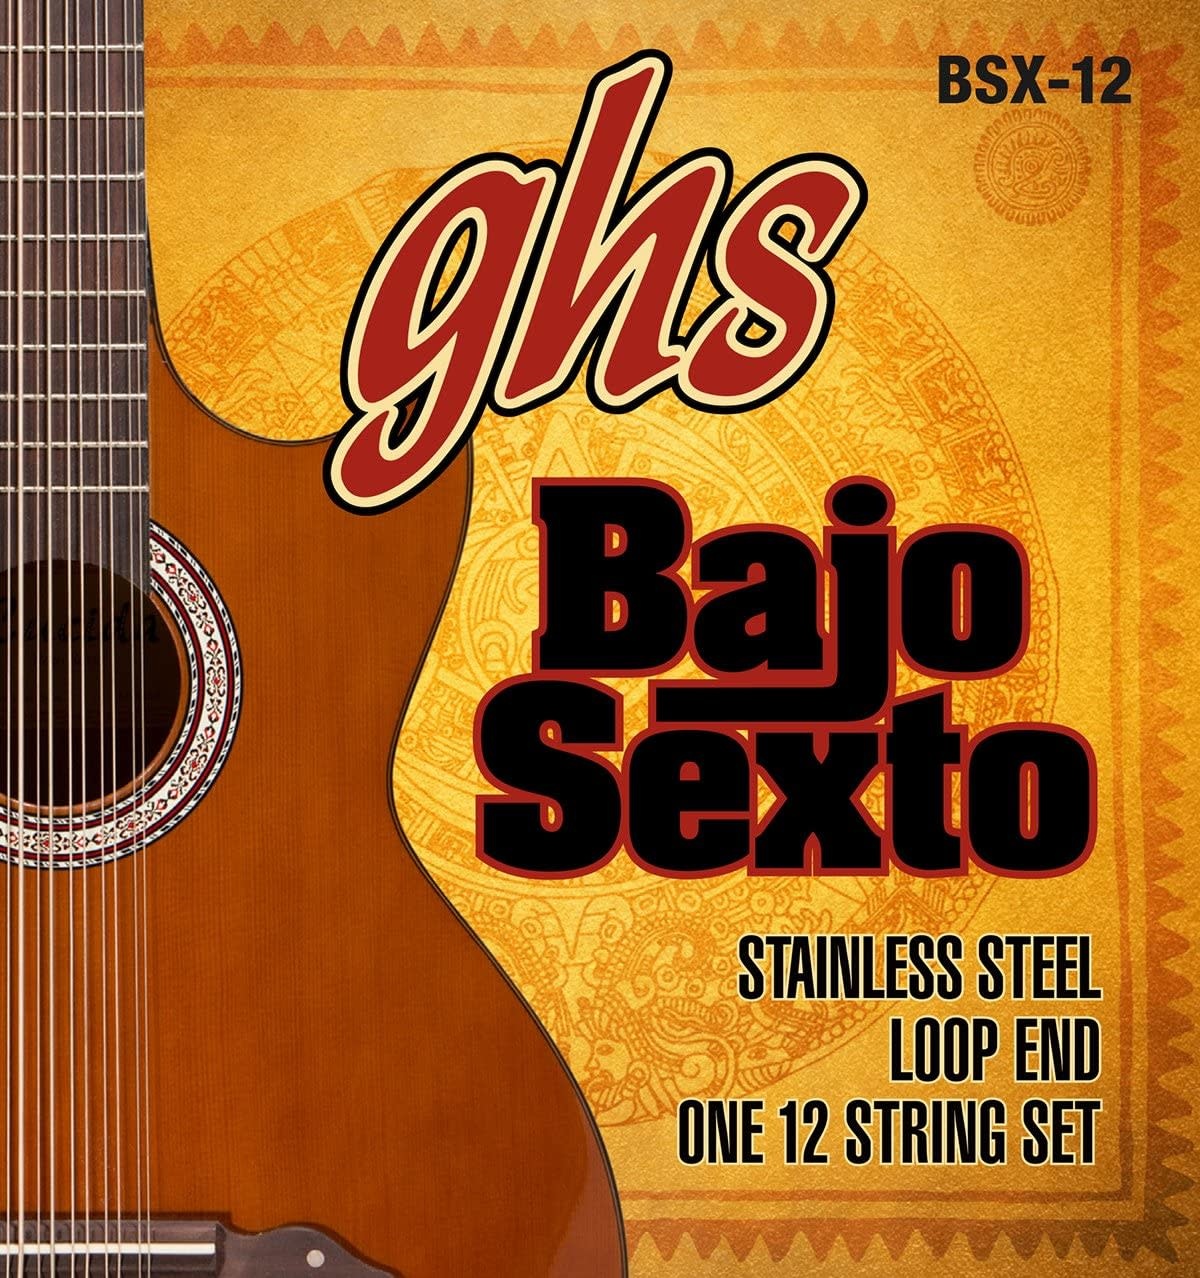 GHS BSX-12 Bajo Sexto Stainless Steel Loop End 12-string set-1